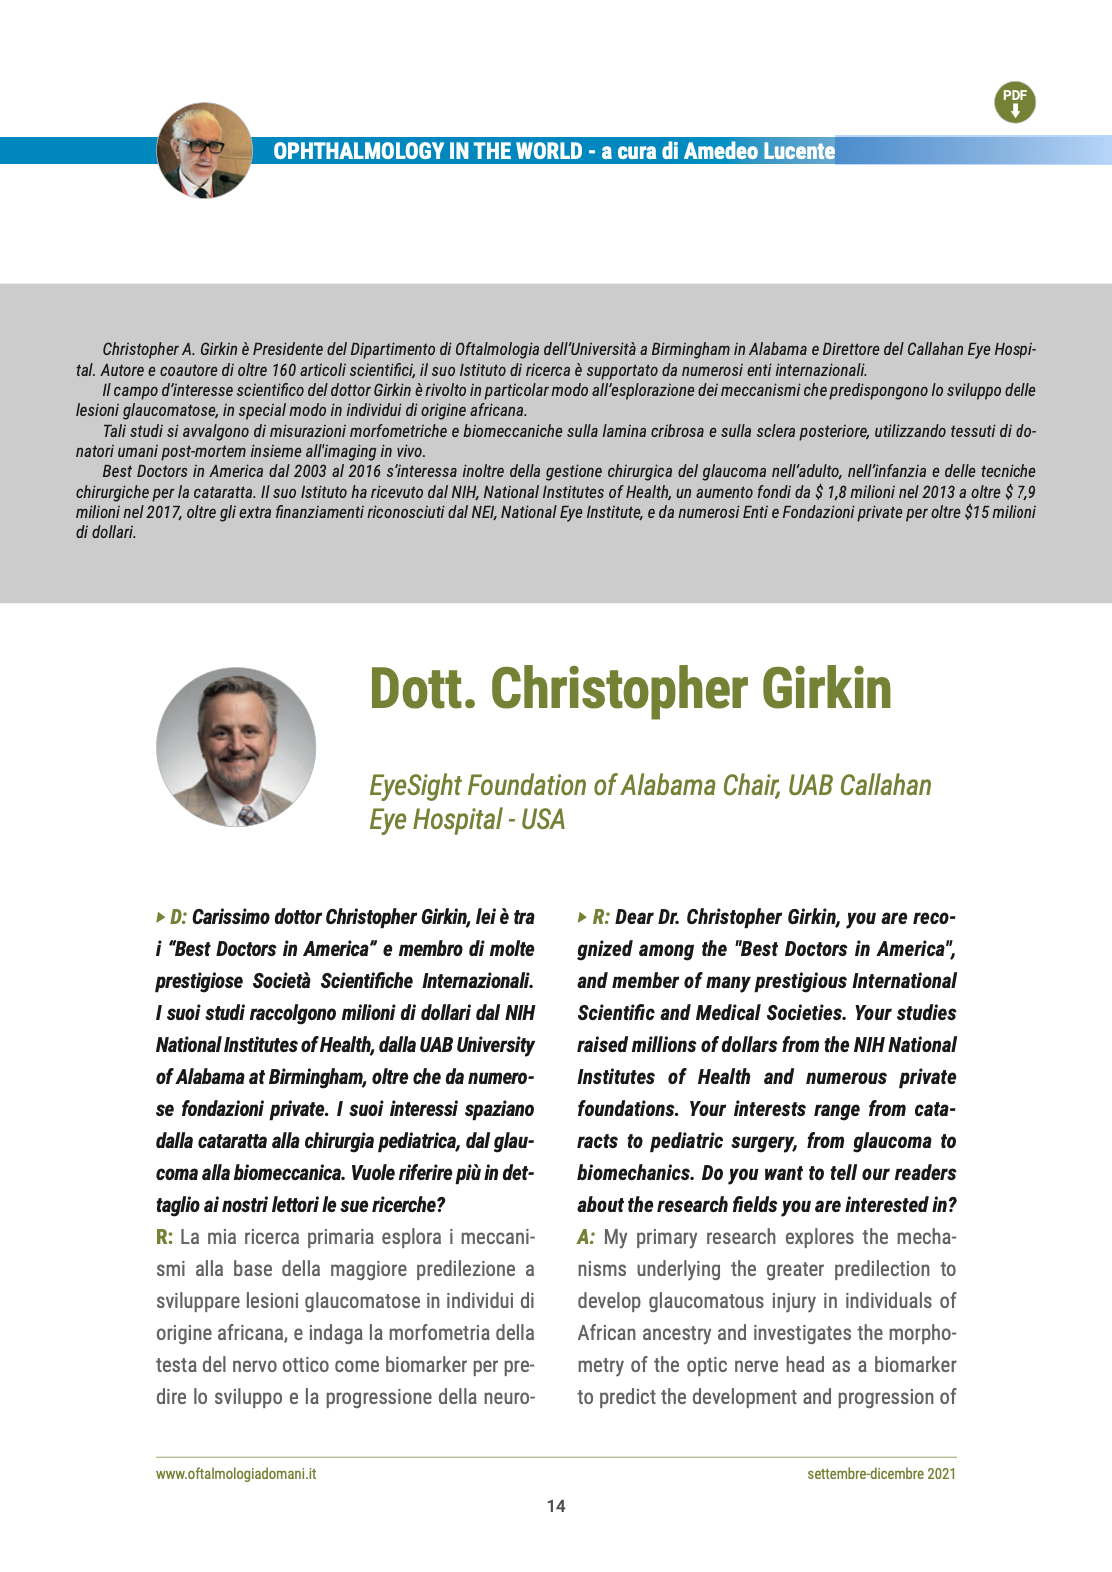 intervista-christopher-girkin